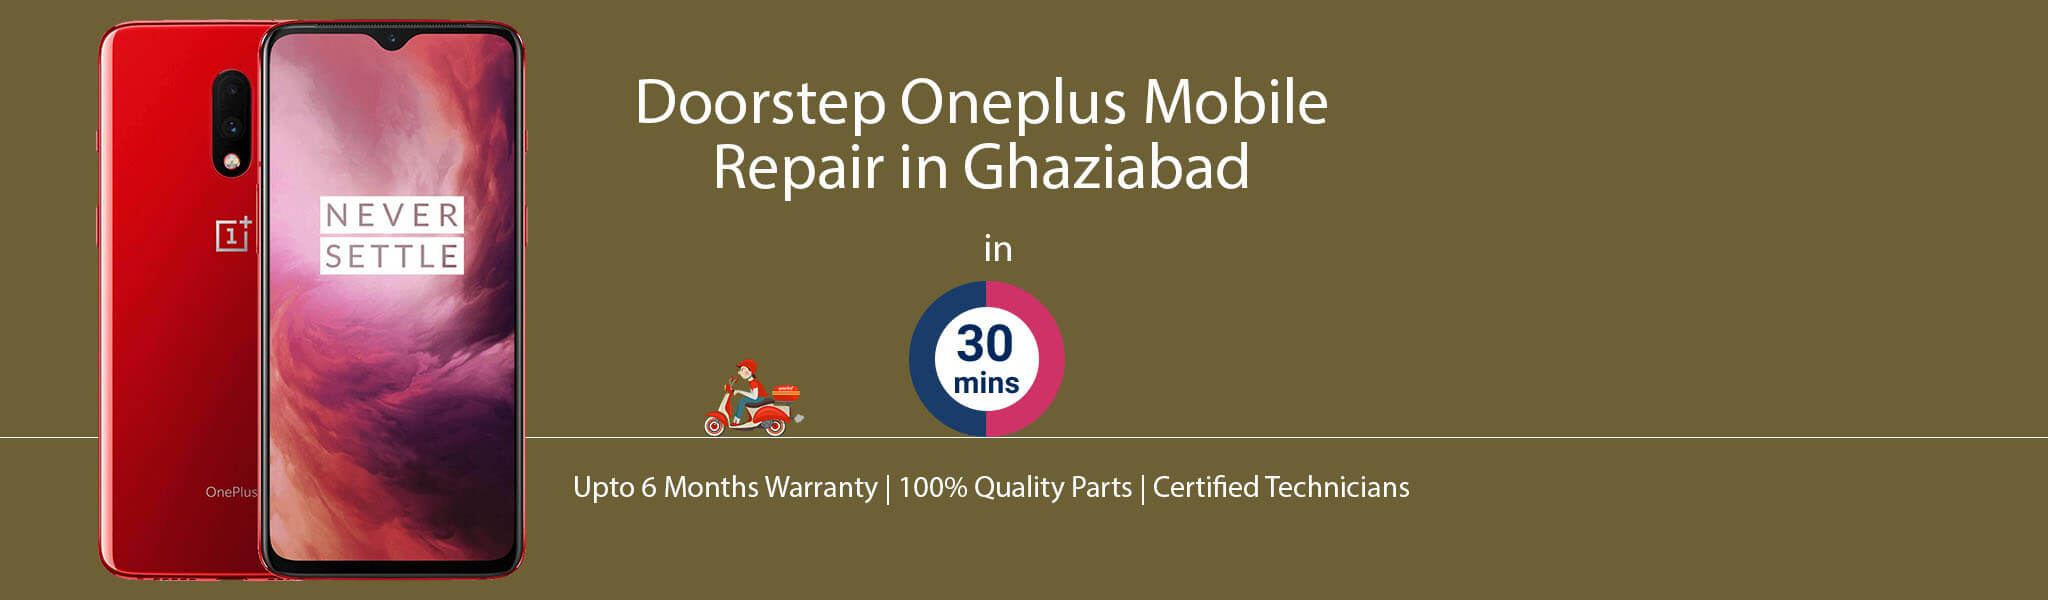 oneplus-repair-service-banner-ghaziabad.jpg